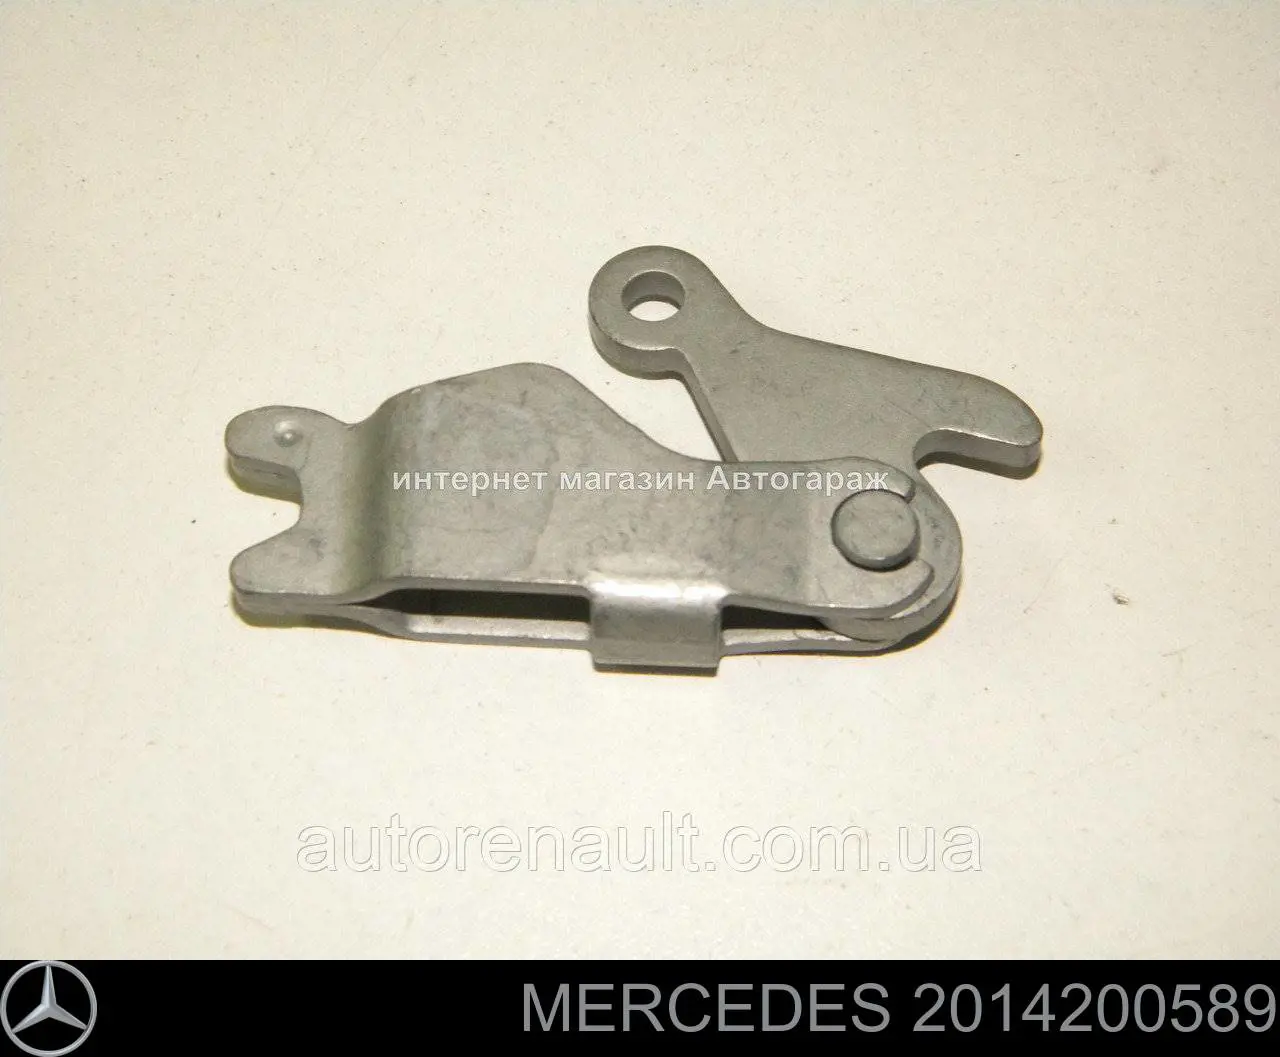 Разжимной механизм колодок стояночного тормоза Mercedes 2014200589